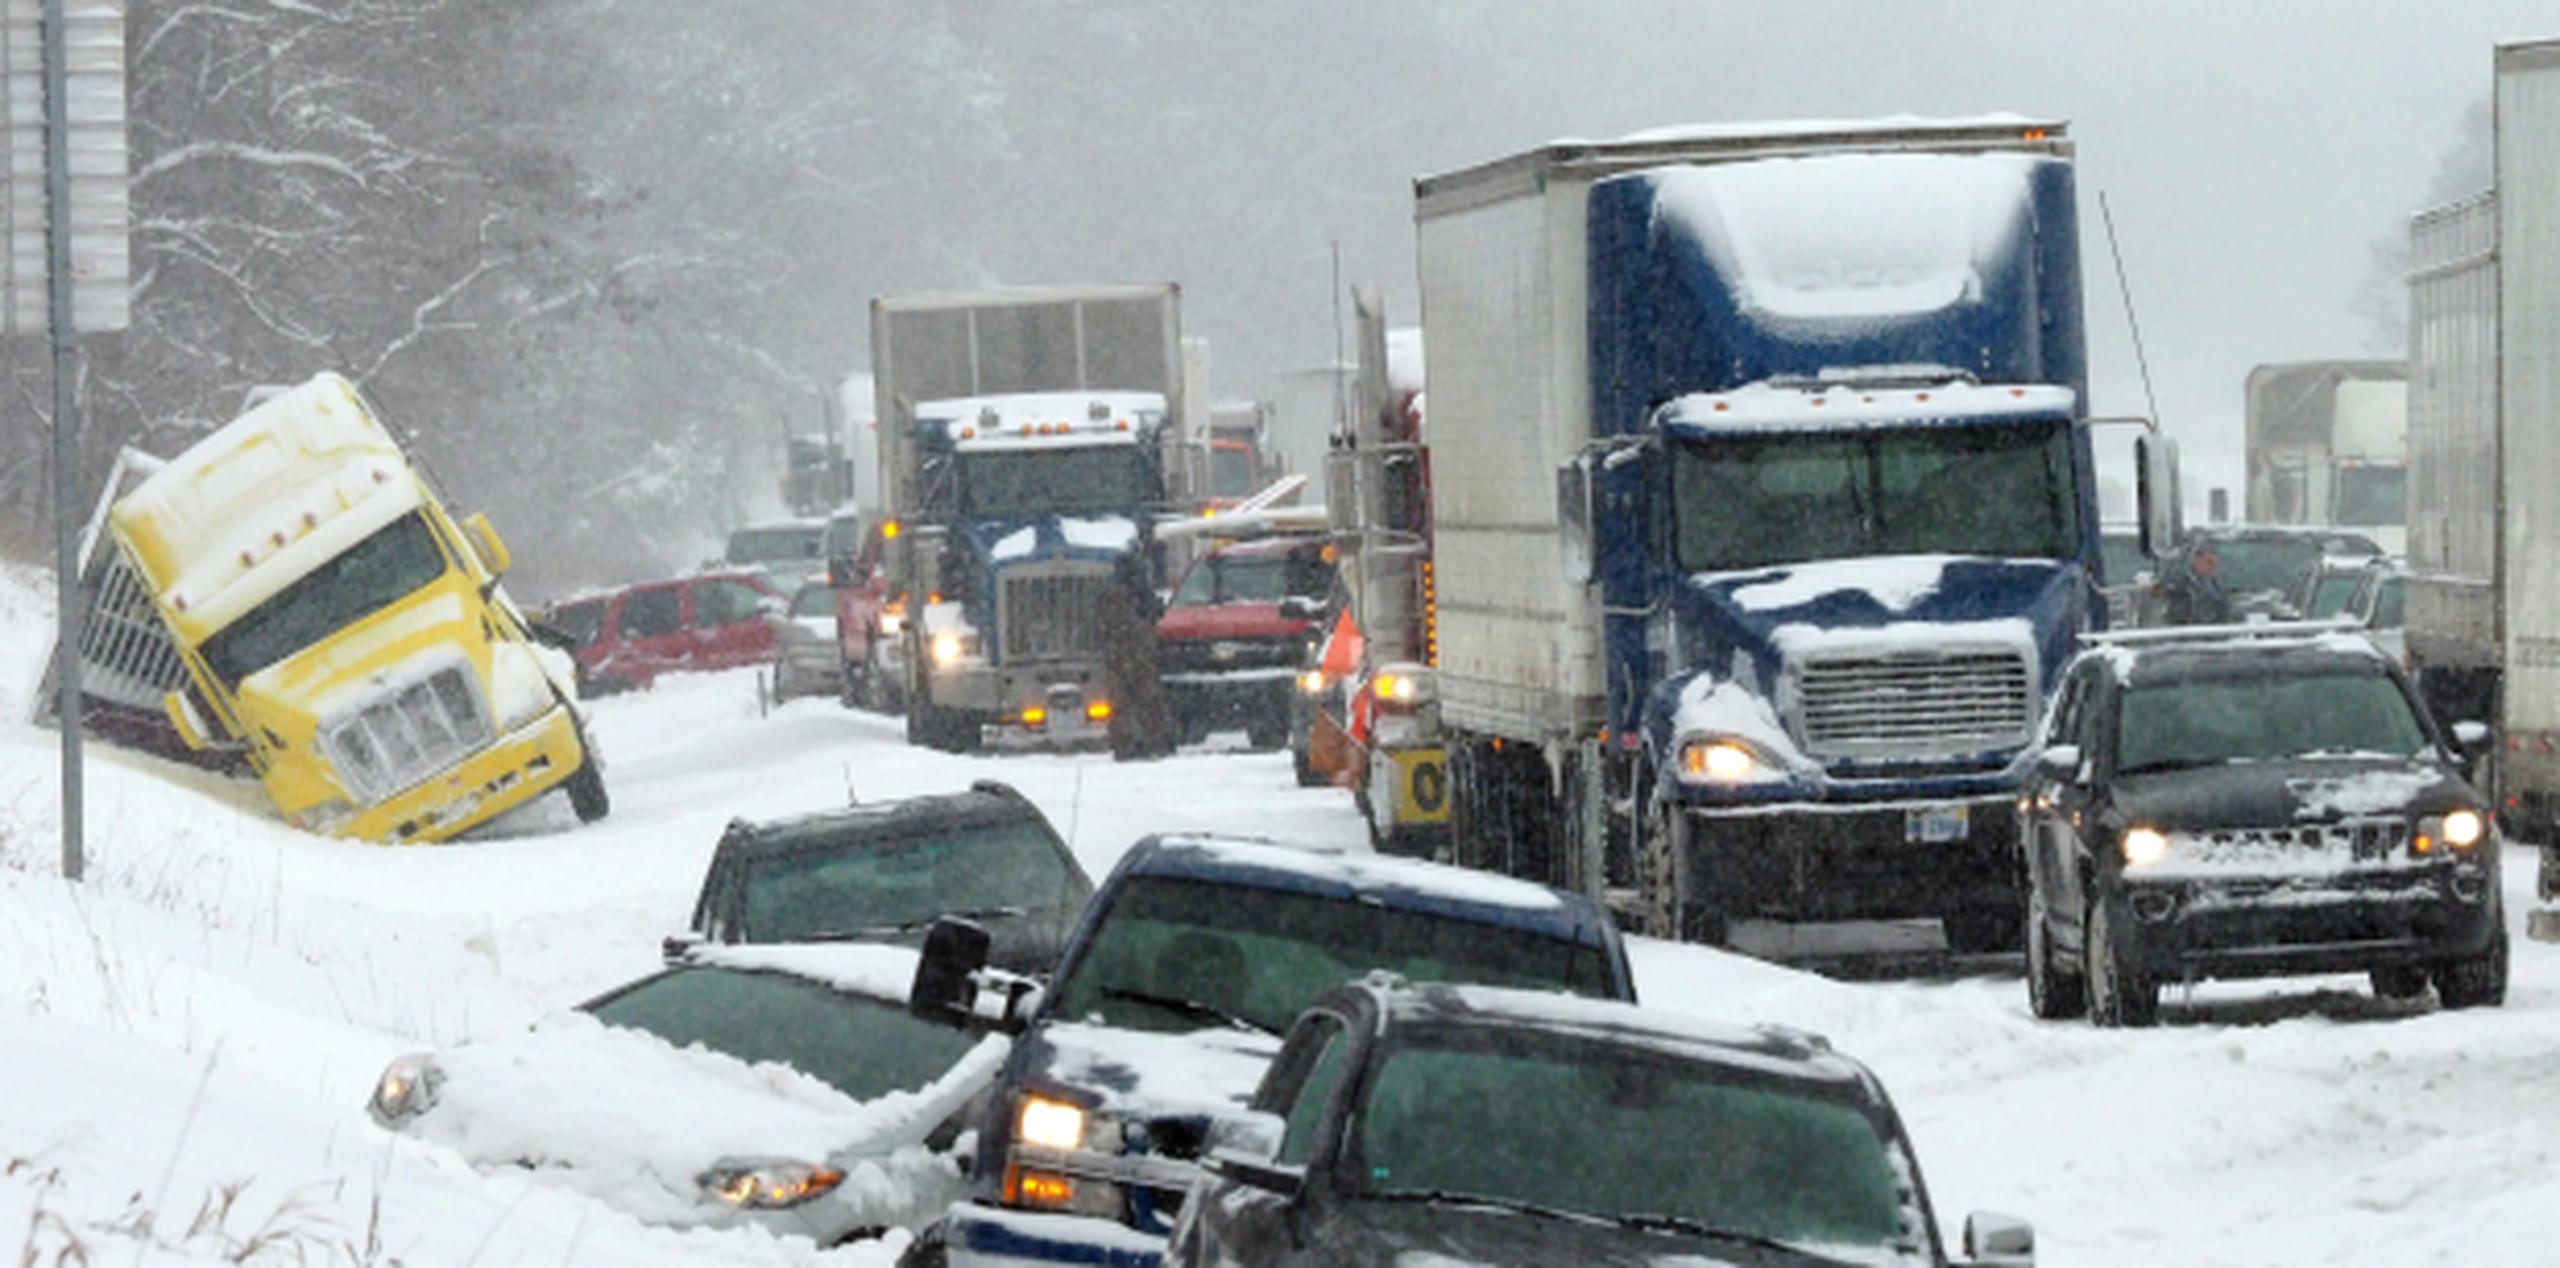 Accidentes de tránsito relacionados con la nieve generaron embotellamientos en las carreteras del sur de Michigan. (AP)